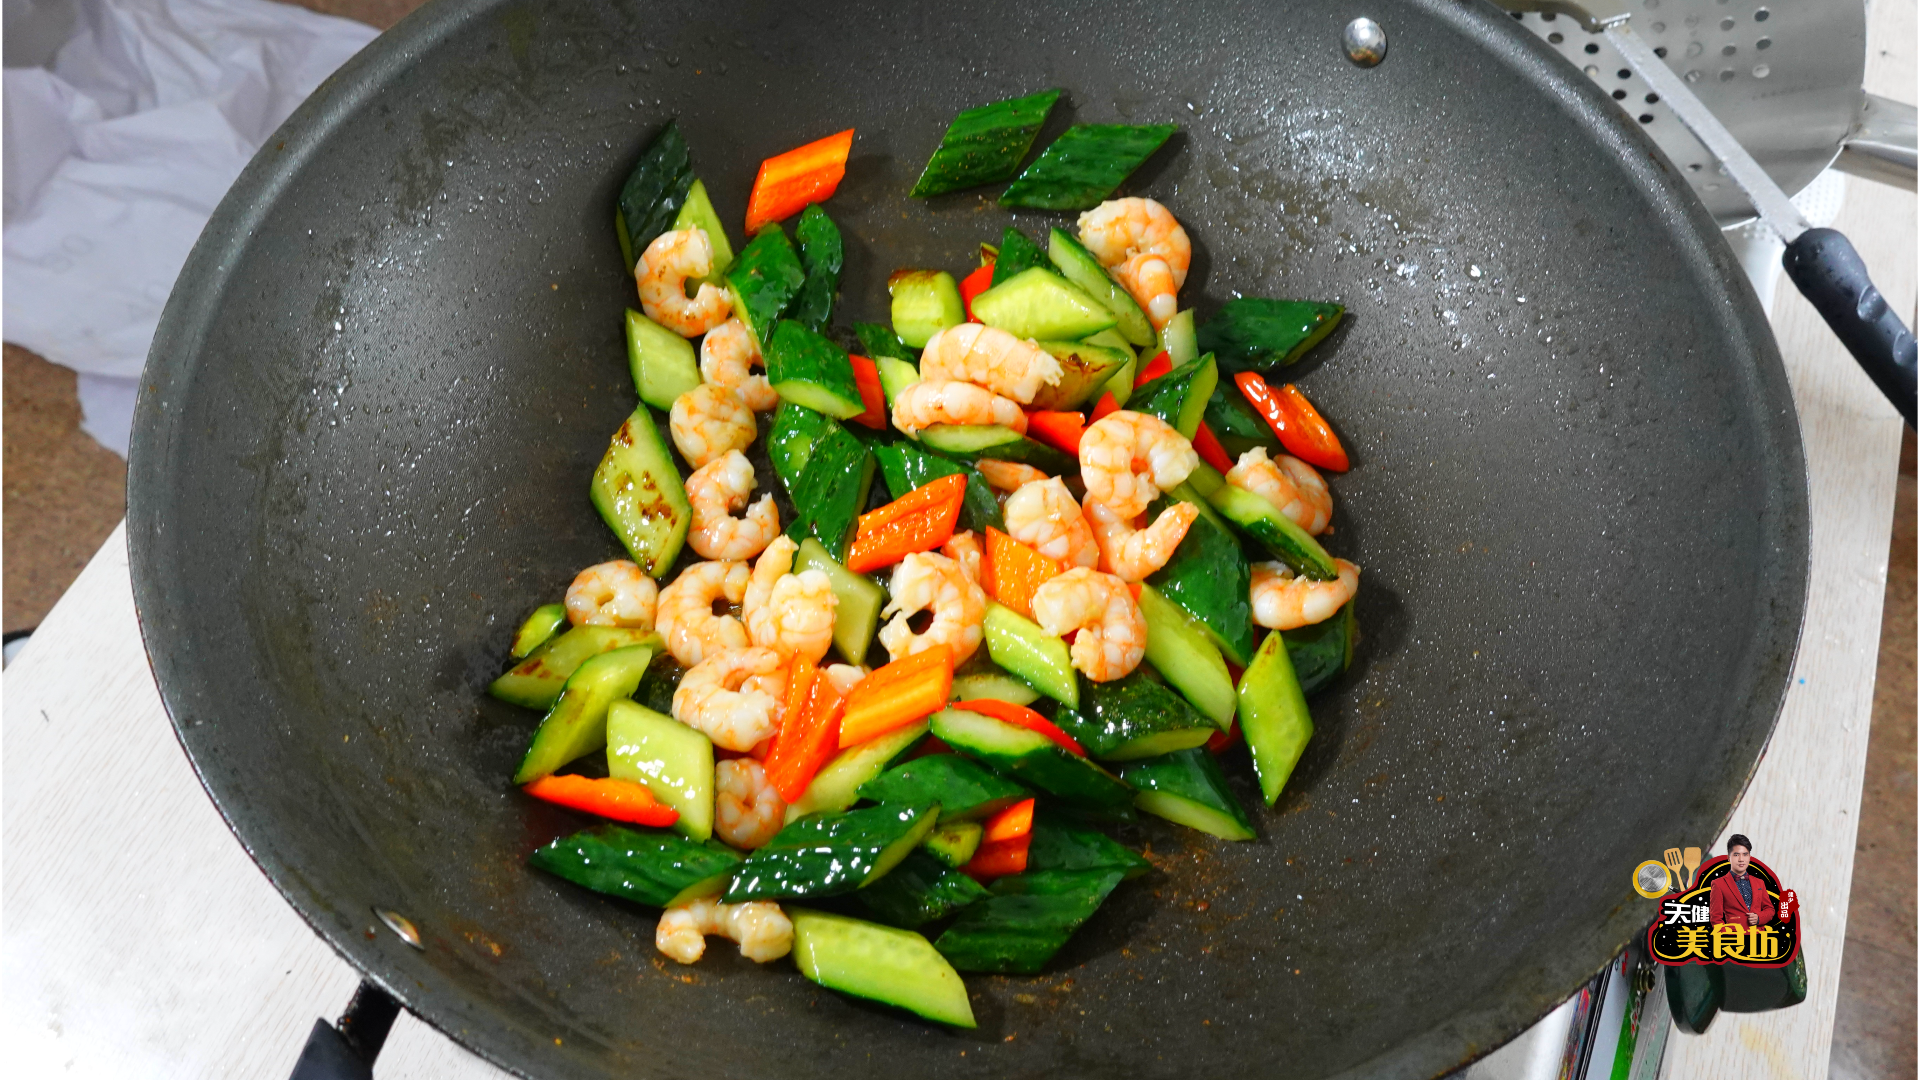 广式黄瓜炒虾仁的做法，配方和步骤全分享给你，厨房小白也能学会